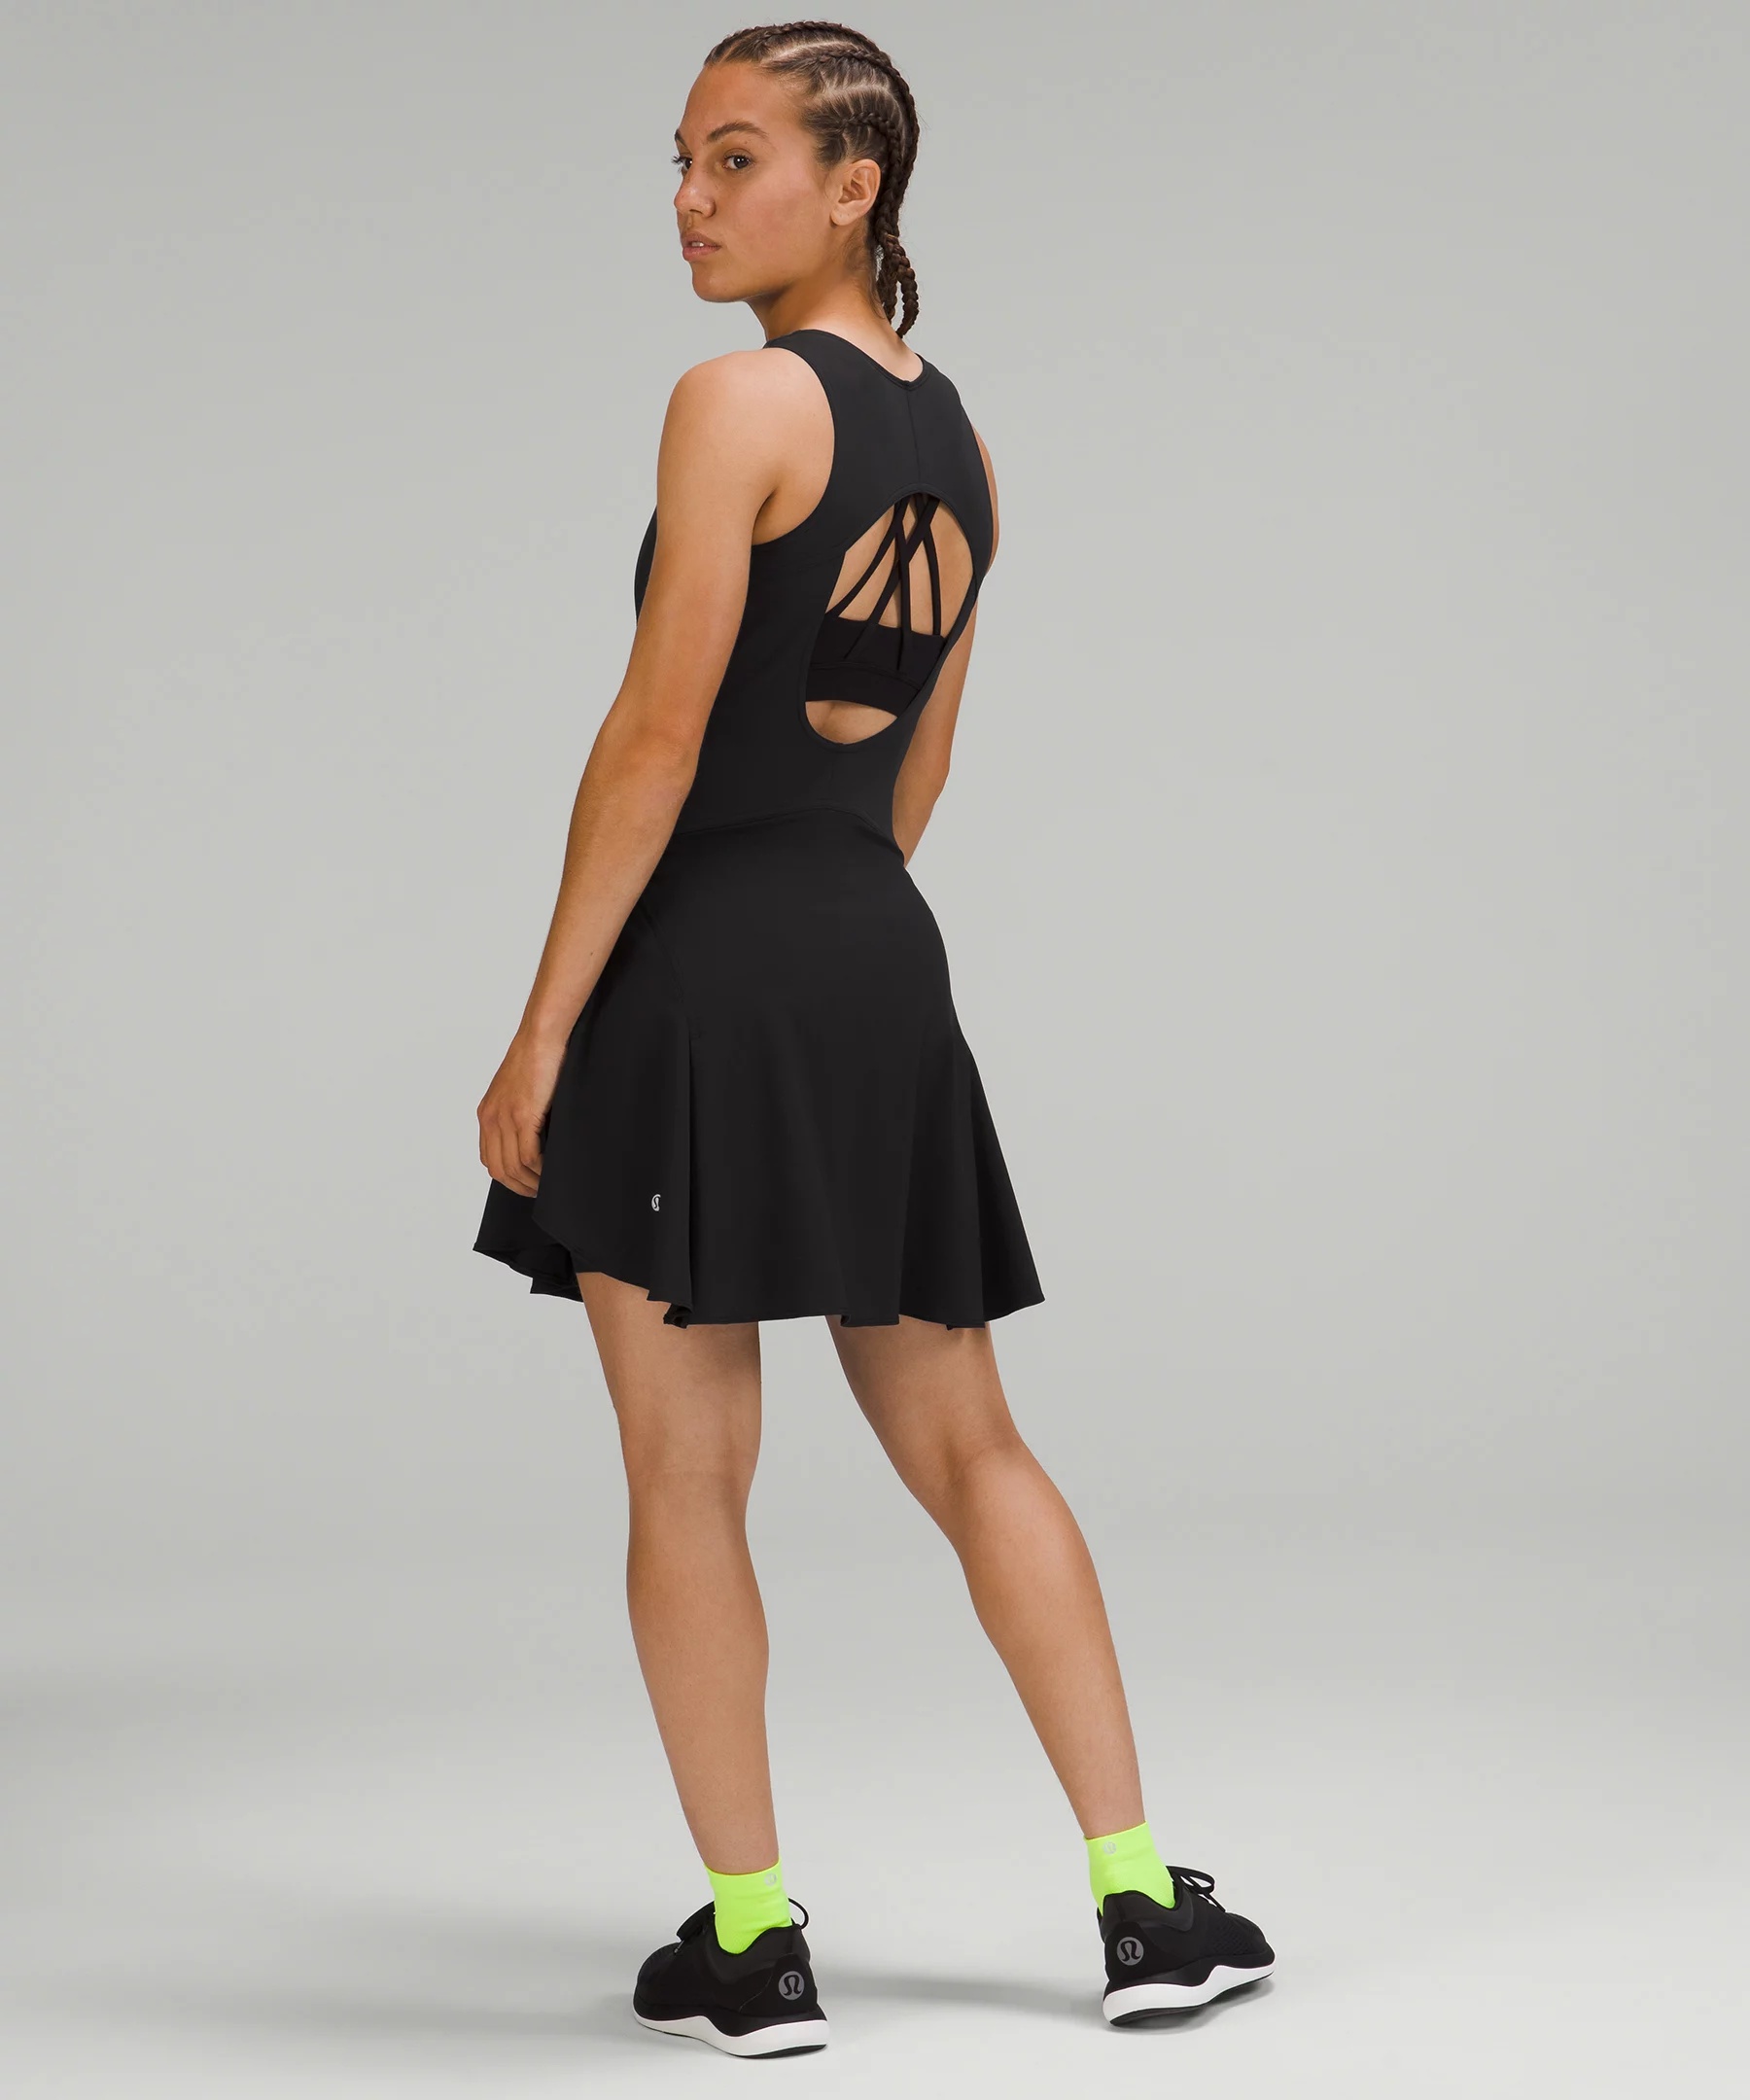 Everlux Short-Lined Tennis Tank Top Dress 6" - 2